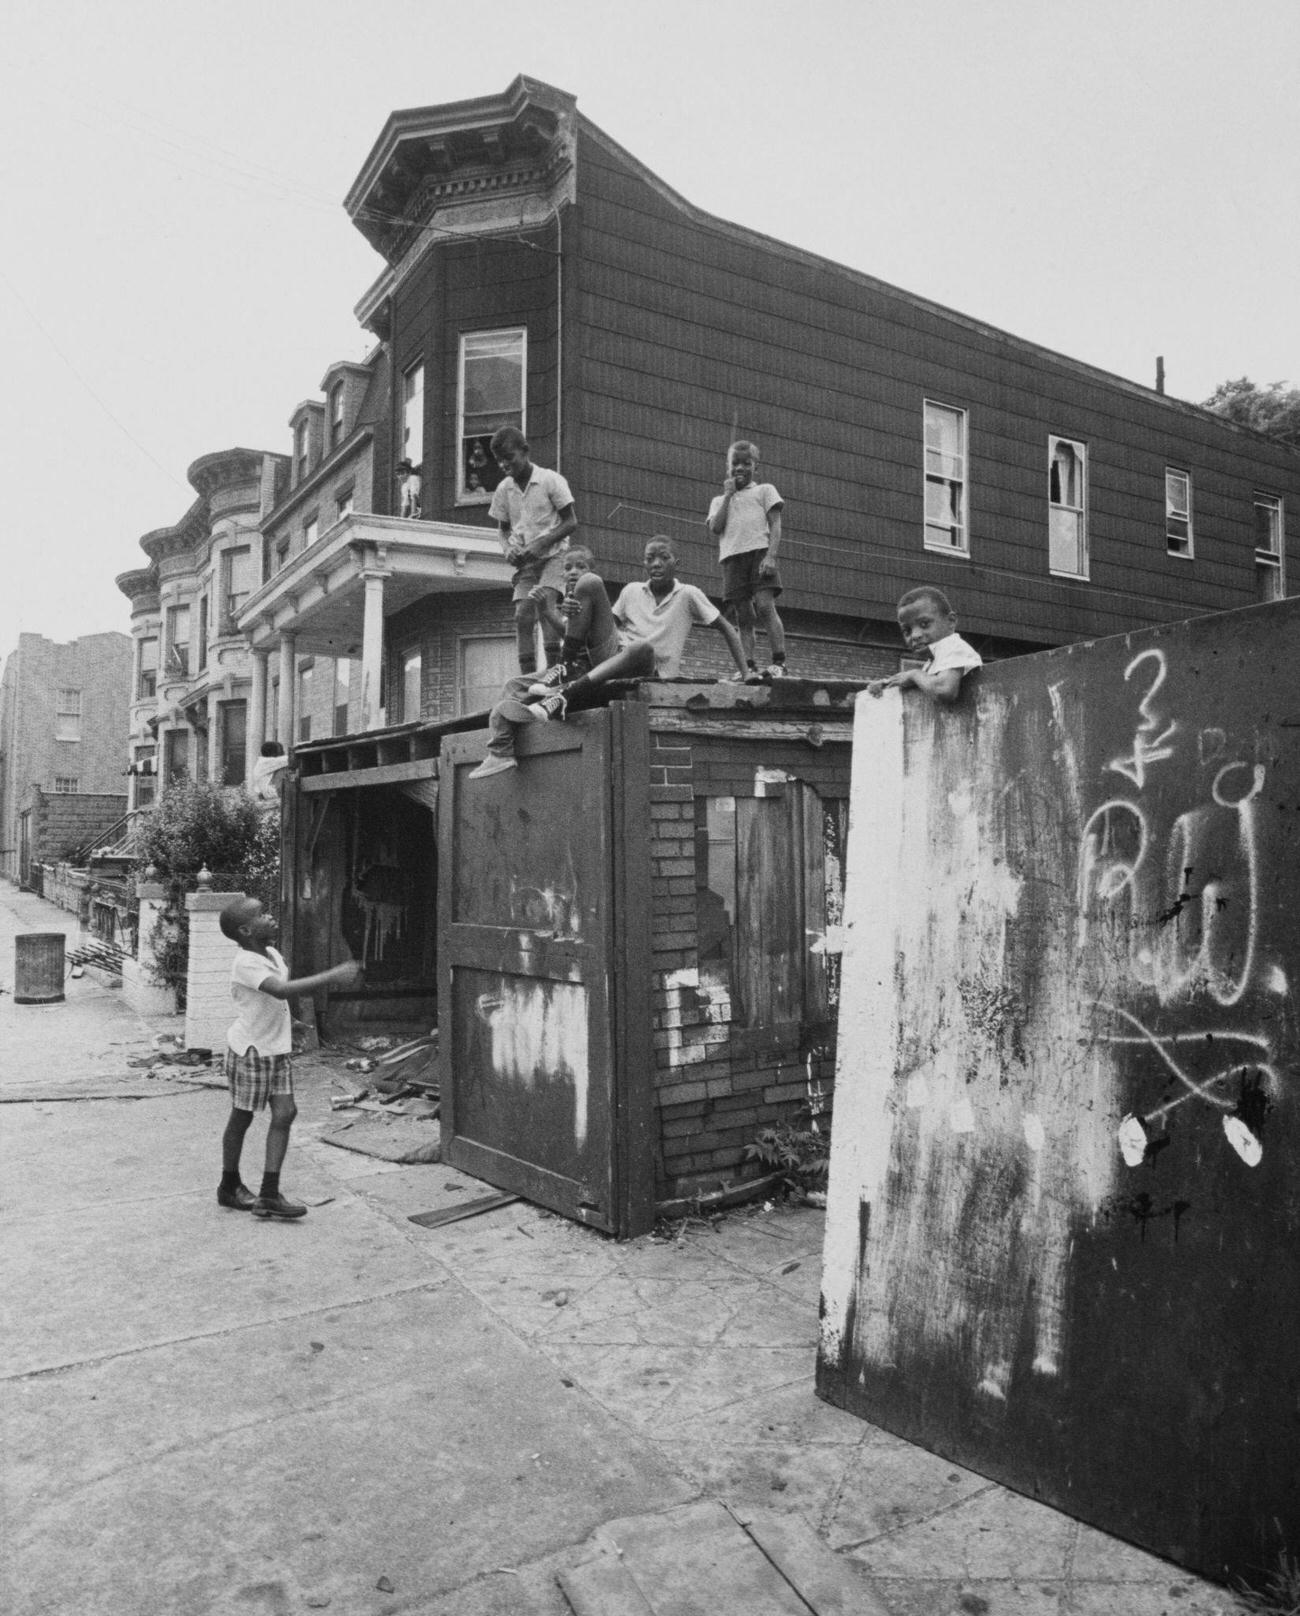 Children On Derelict Garage In Bedford-Stuyvesant, Brooklyn, 1975.